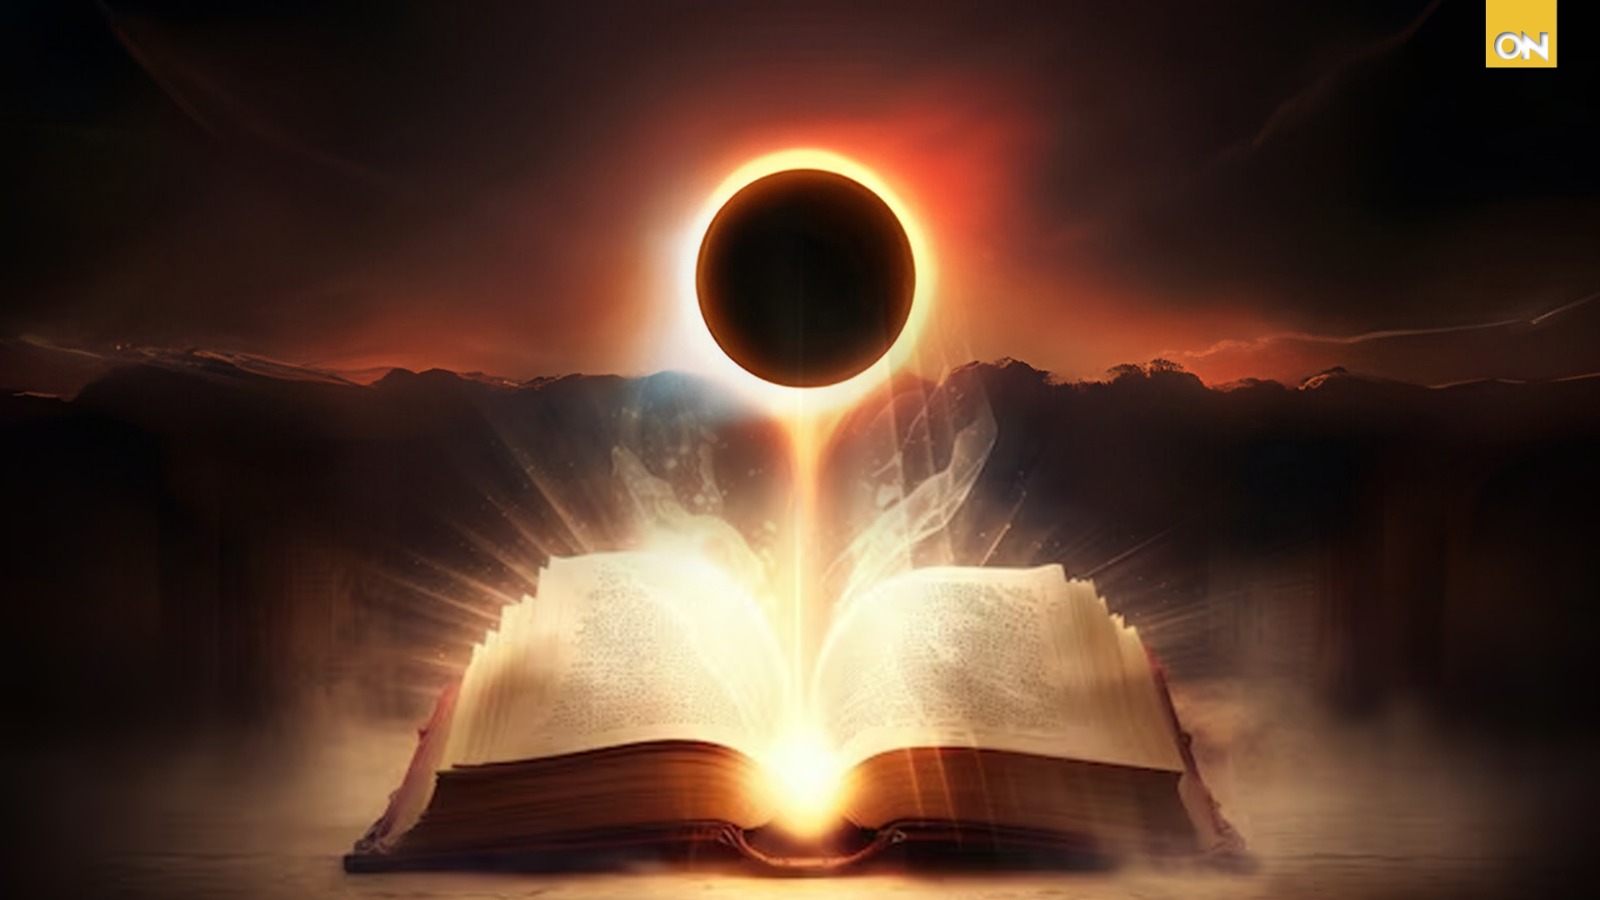 El eclipse y la Biblia: “El sol y la luna se oscurecerán”, ¿Señales celestiales o coincidencias? 😰